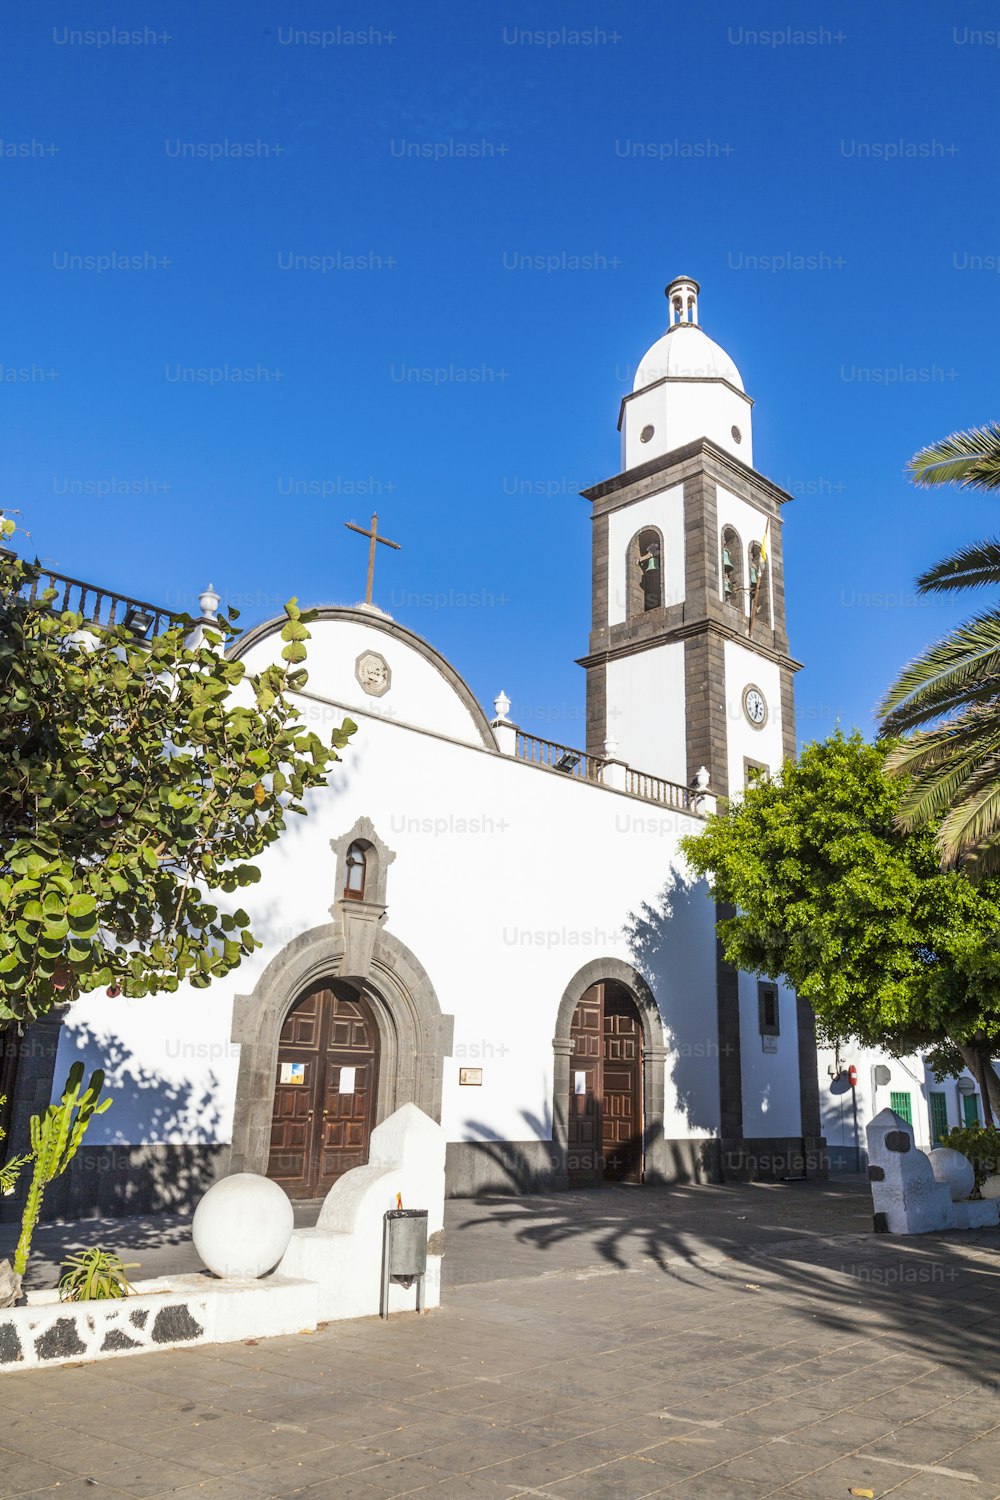 Die schöne Kirche San Gines in Arrecife mit ihrer weiß getünchten Fassade und dem attraktiven Glockenturm